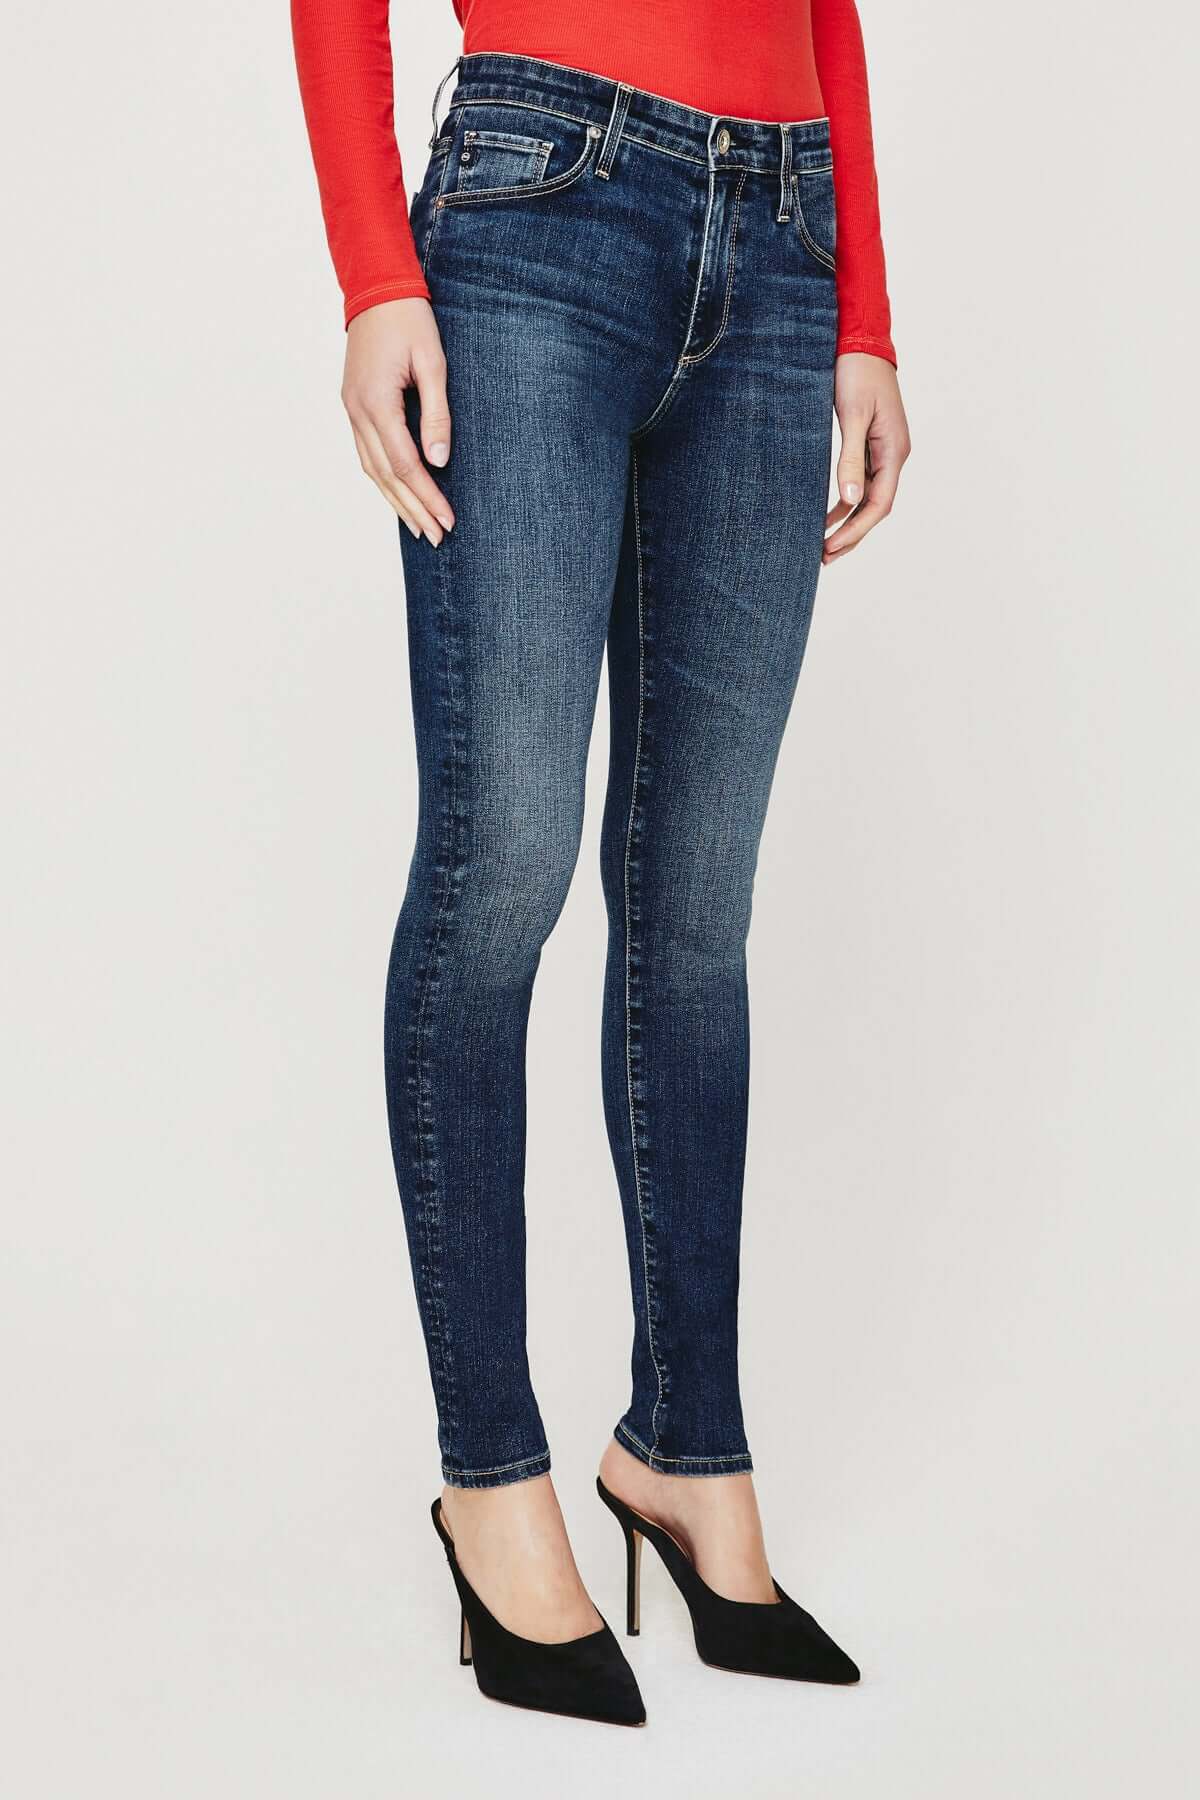 Elendra jeans Women Blue Slim fit Jeans